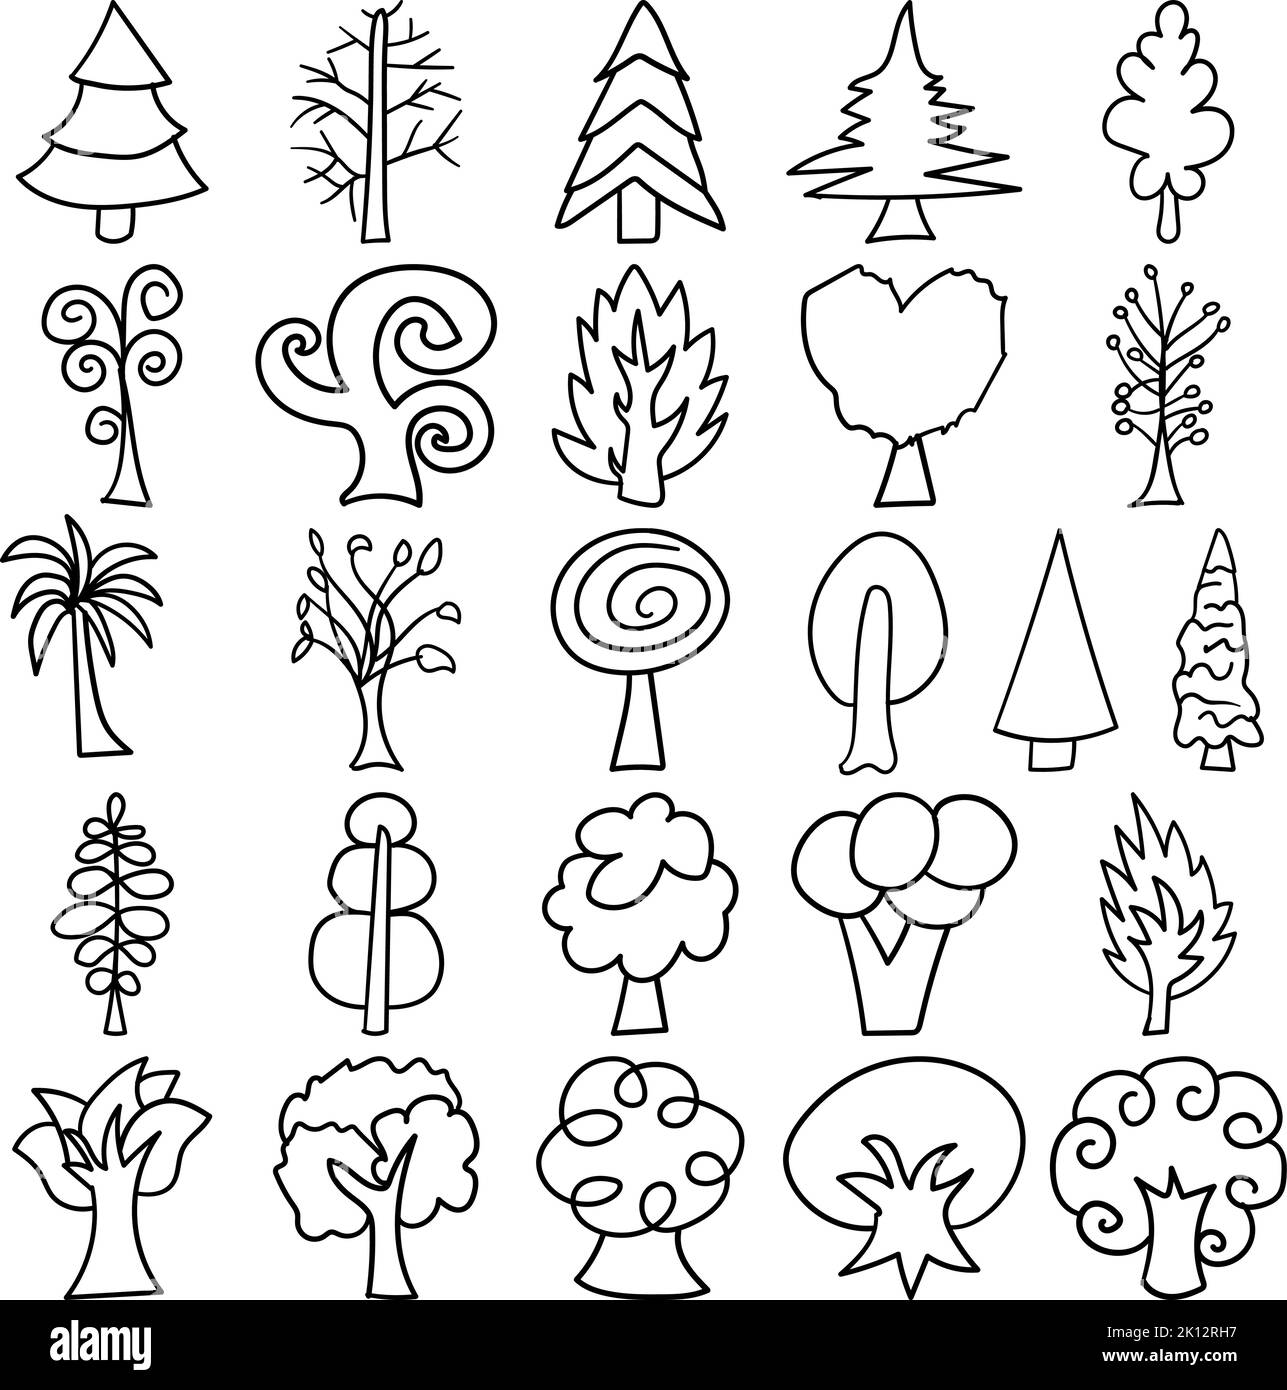 Bäume Handgezeichnete Doodle Line Art Outline Set mit Bäumen, Baum, Pflanze, Holz, Laube, Wald, Laube, Flora, Wald, Kipling, Keimling, Strauch Stock Vektor